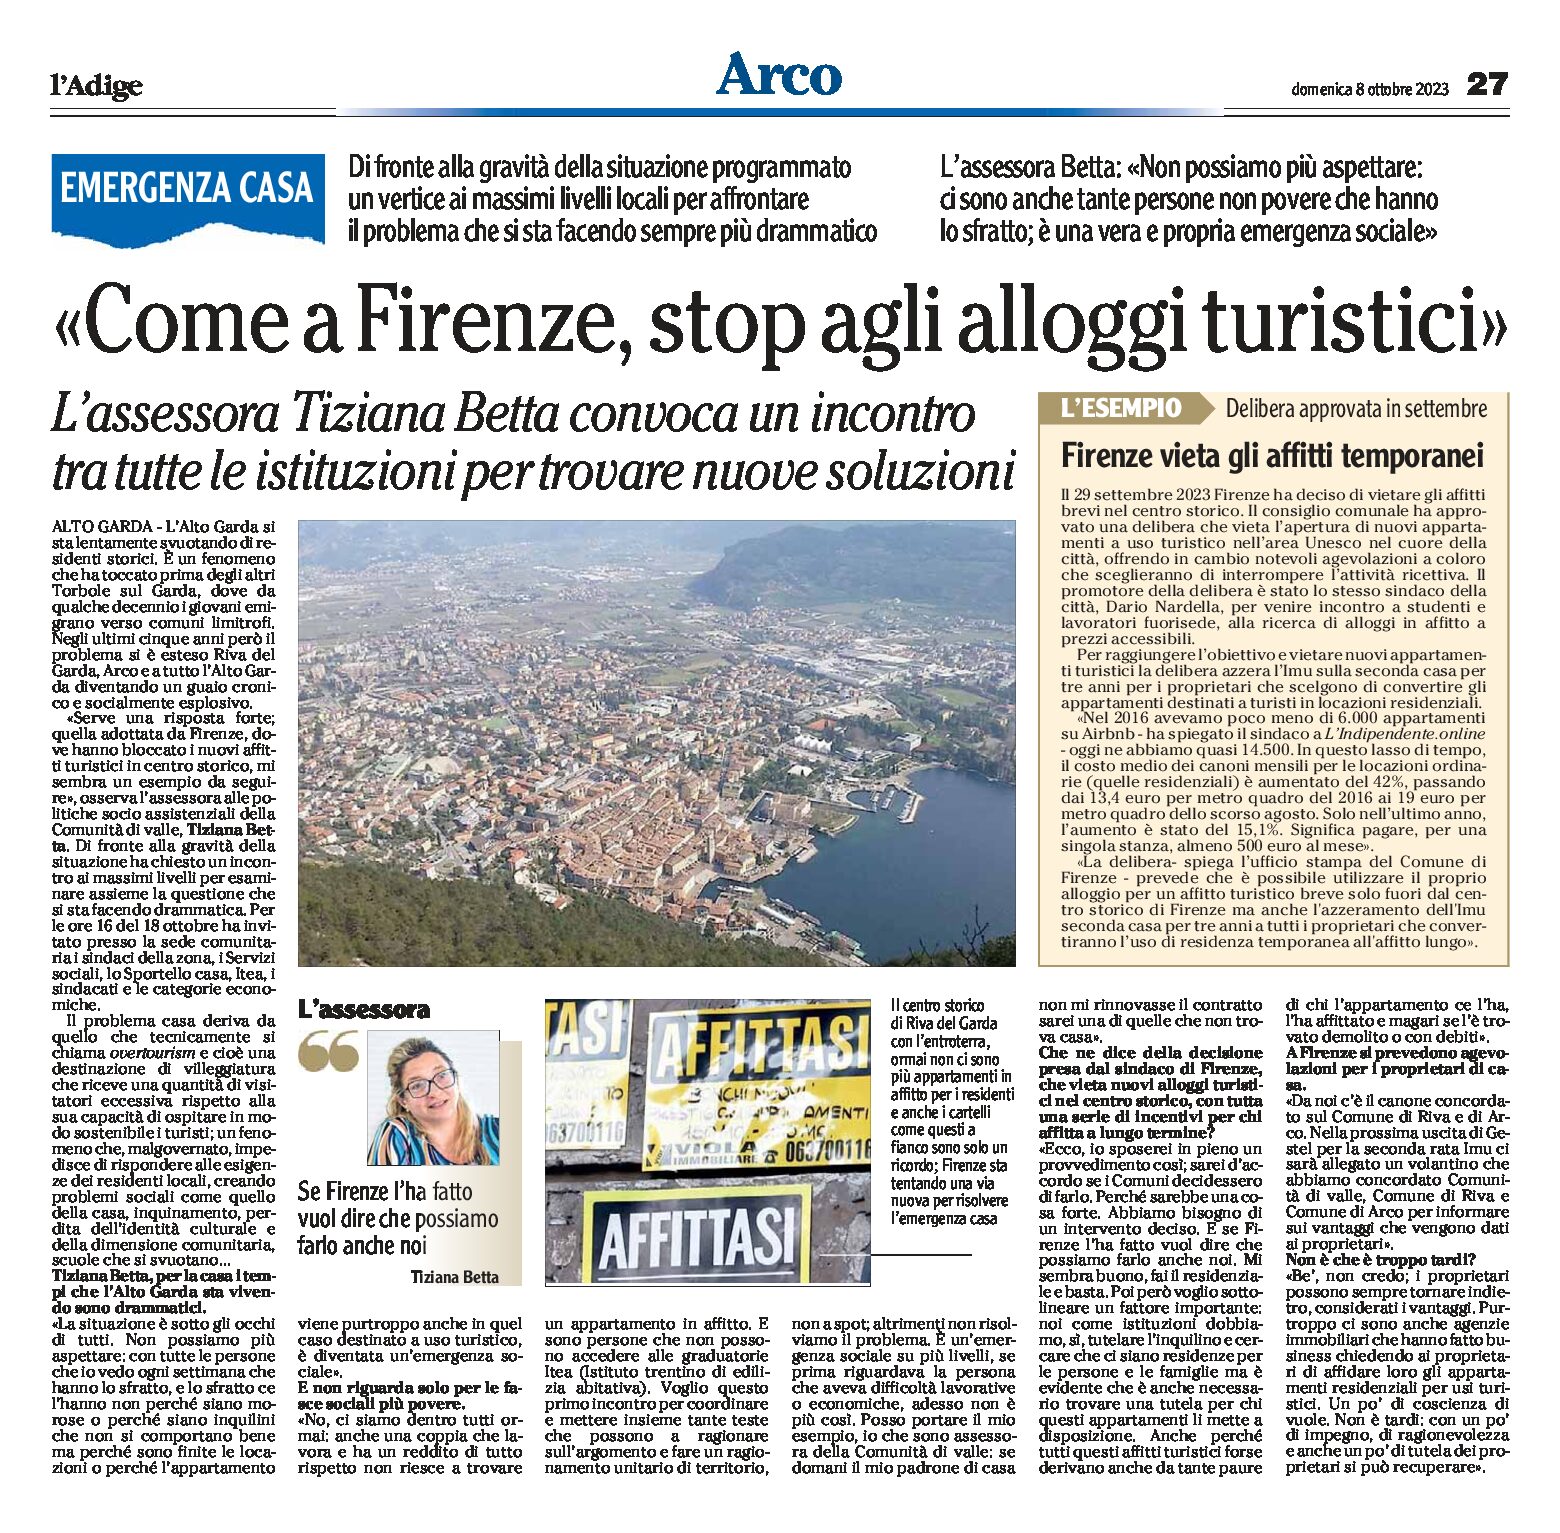 Arco, emergenza casa: come a Firenze, stop agli alloggi turistici